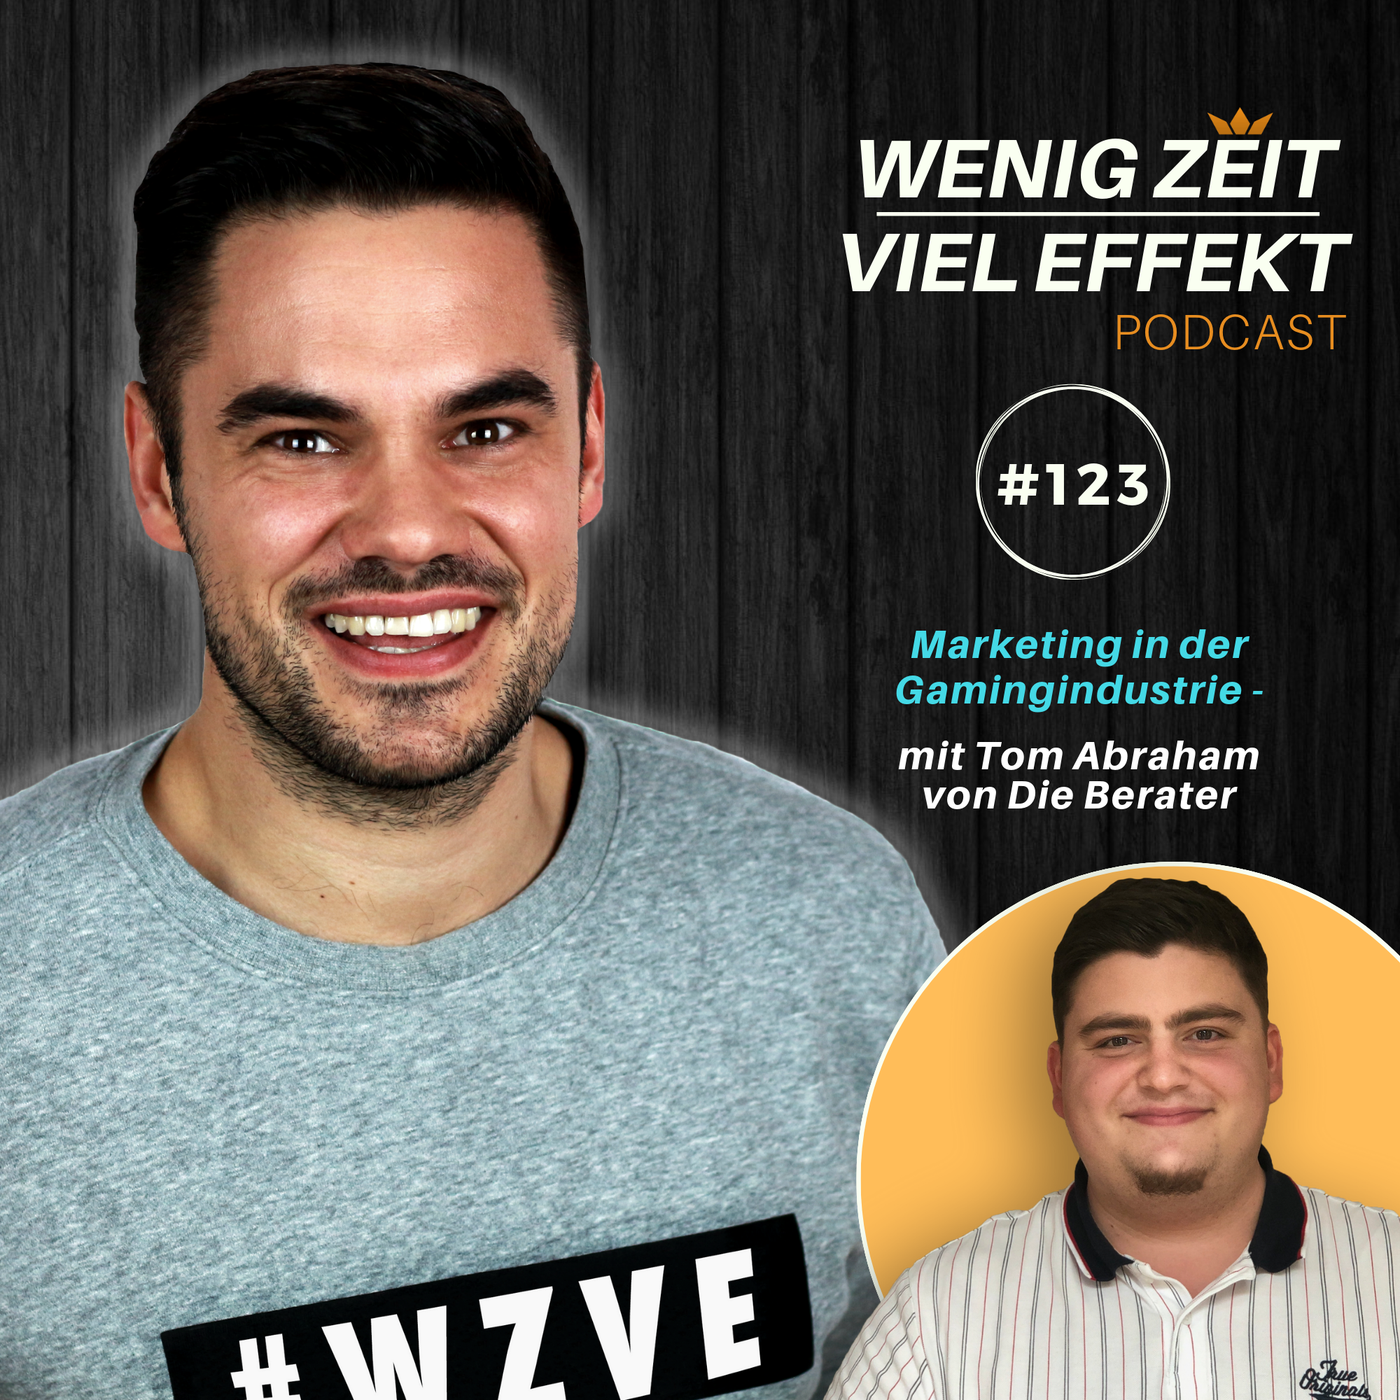 Marketing in der Gamingindustrie - mit Tom Abraham von Die Berater | WZVE #123